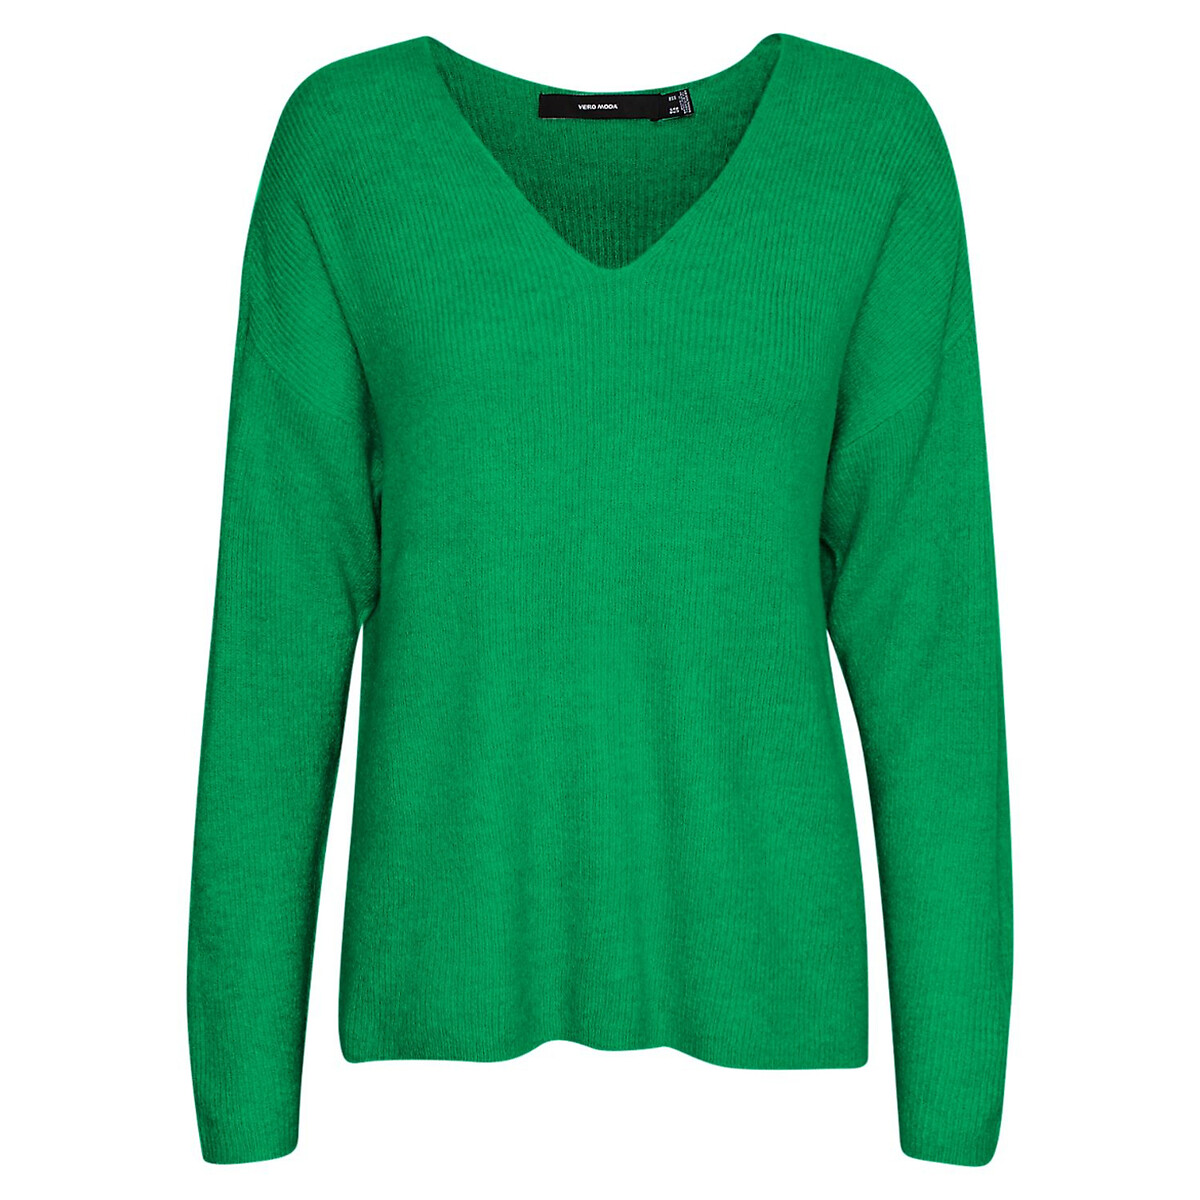 Пуловер Из пышного трикотажа V-образный вырез L зеленый LaRedoute, размер L - фото 5